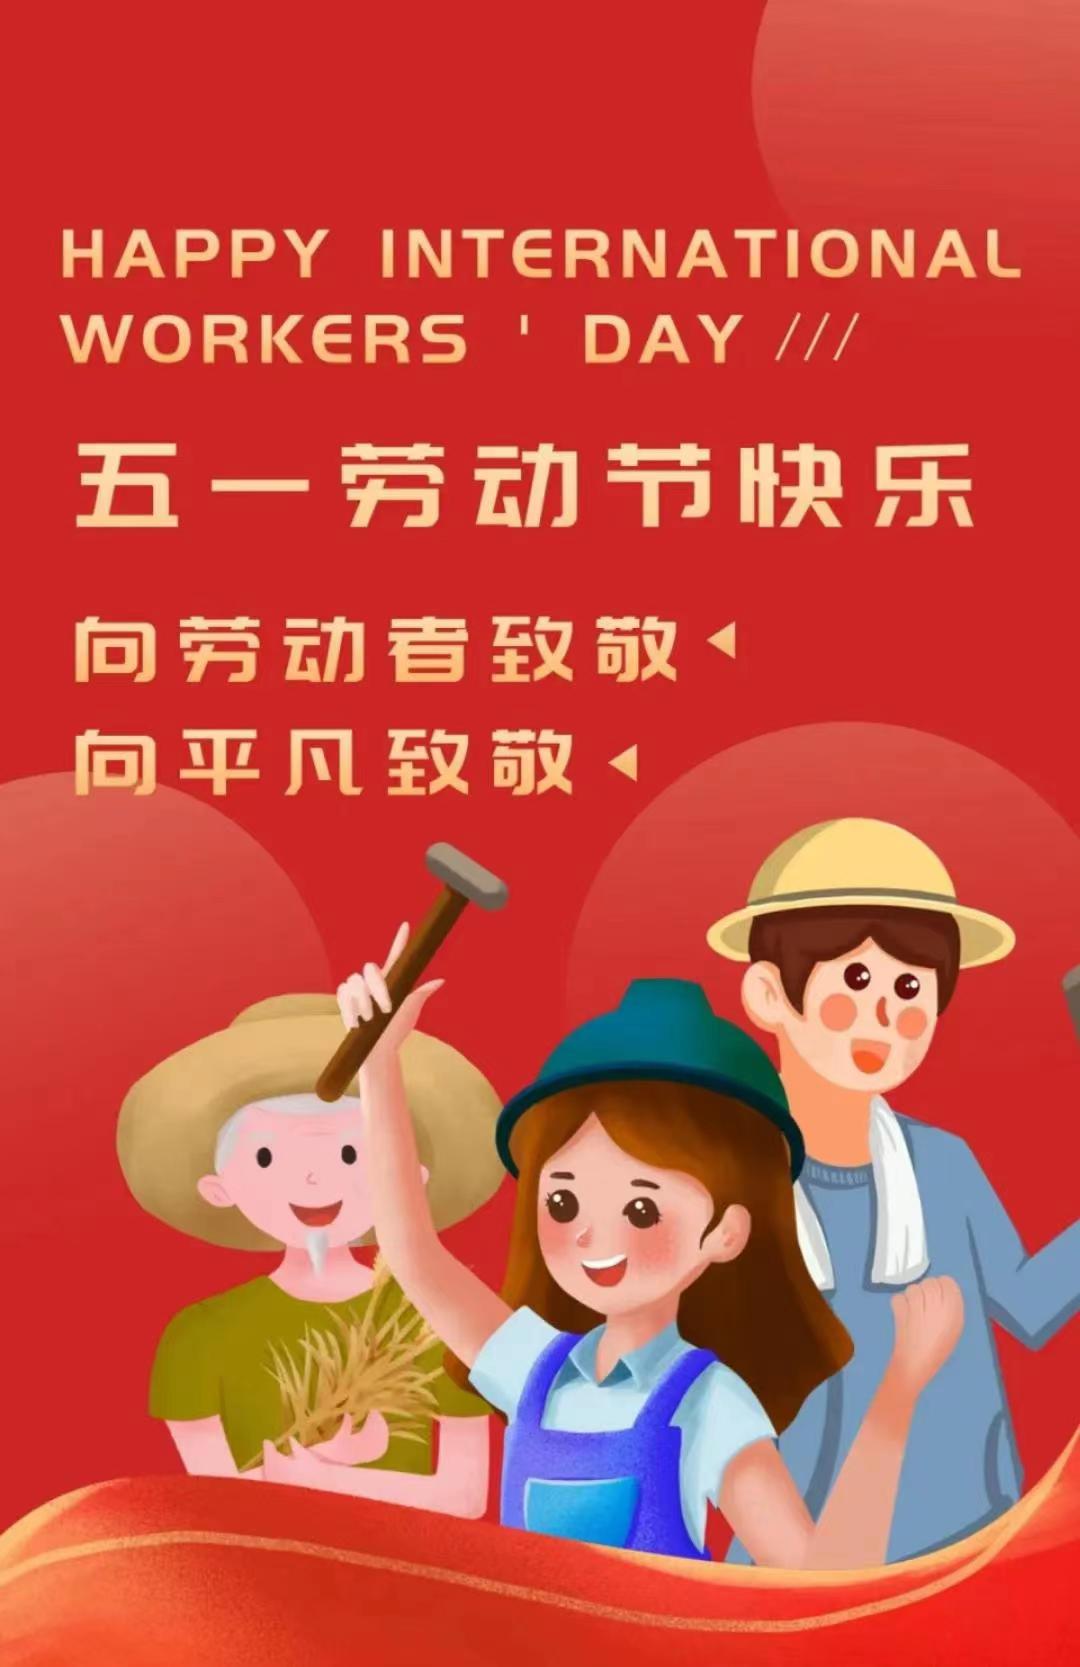 1. svibnja Međunarodni praznik rada